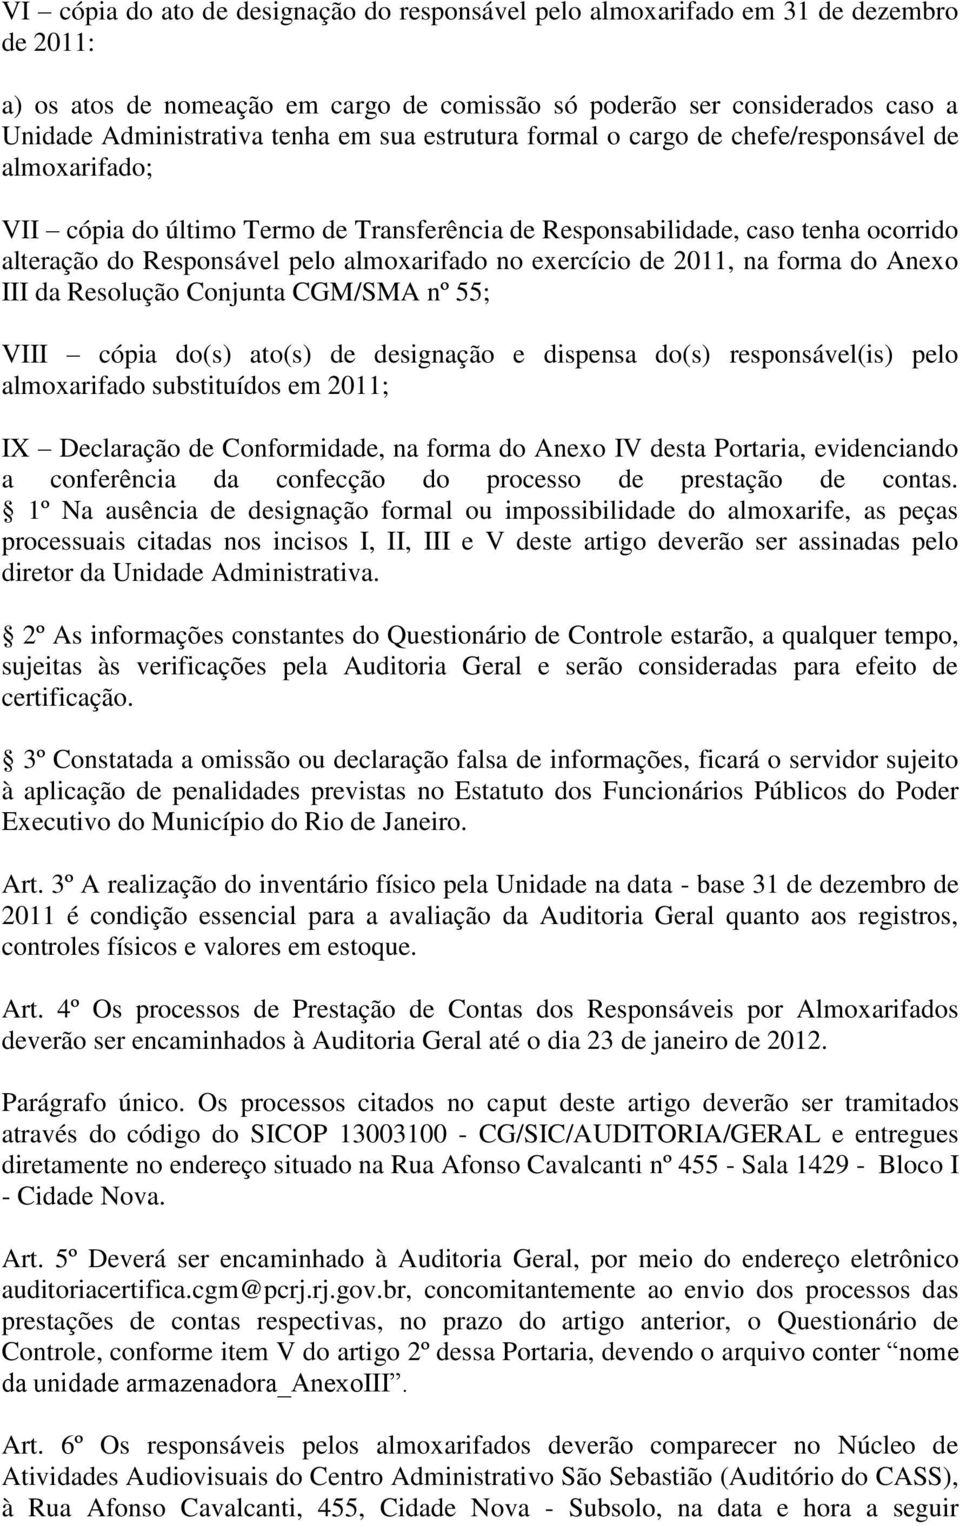 exercício de 2011, na forma do Anexo III da Resolução Conjunta CGM/SMA nº 55; VIII cópia do(s) ato(s) de designação e dispensa do(s) responsável(is) pelo almoxarifado substituídos em 2011; IX